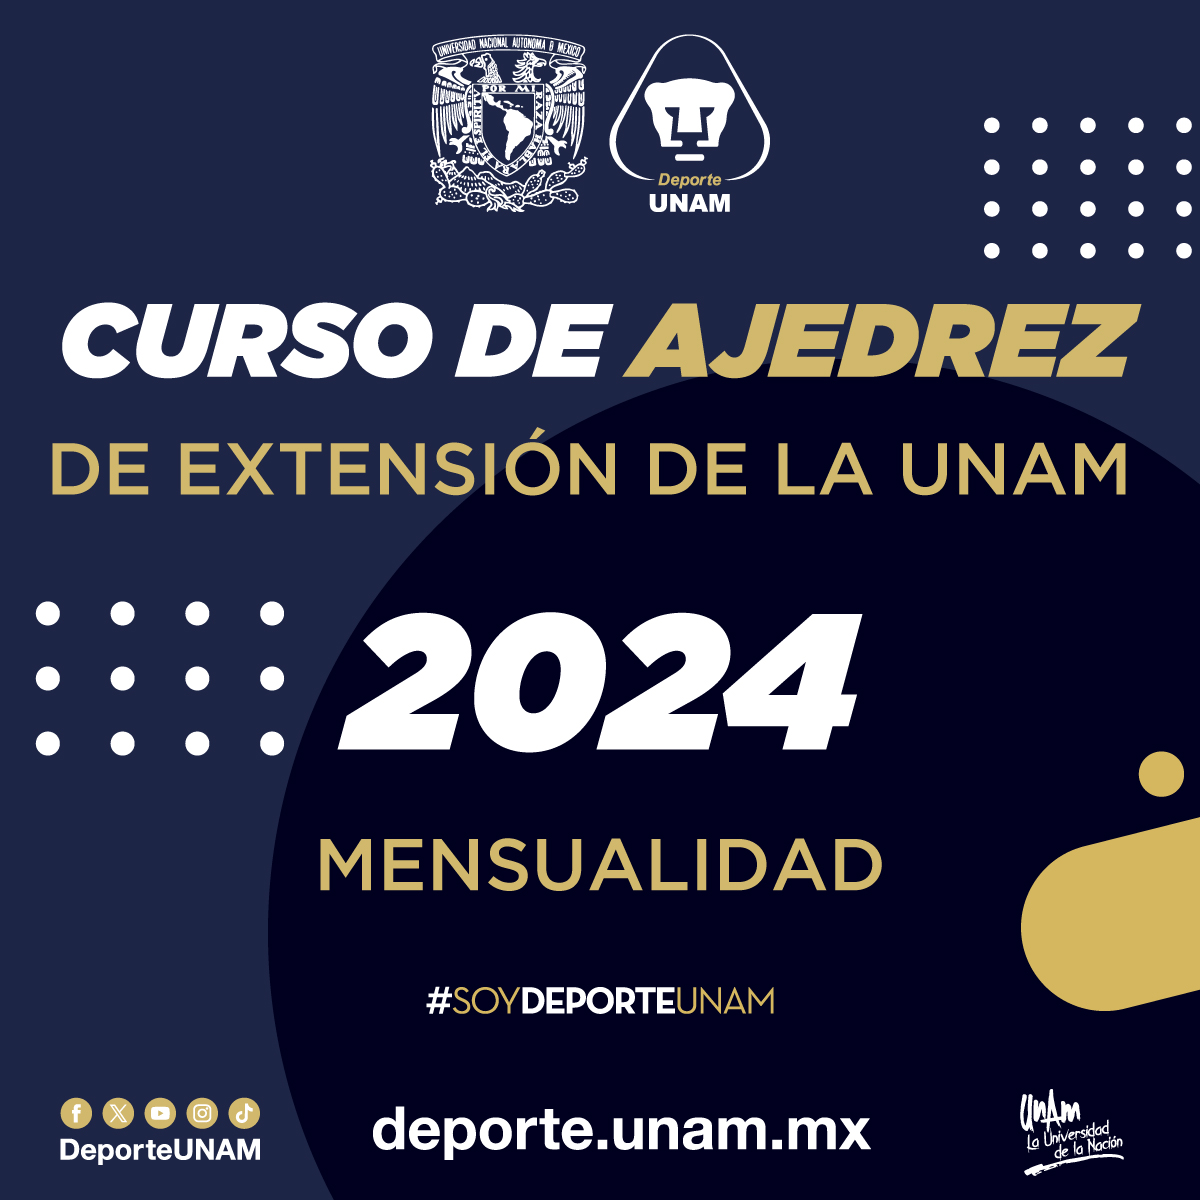 CURSO DE AJEDREZ DE EXTENSIÓN DE LA UNAM 2024 MENSUALIDAD